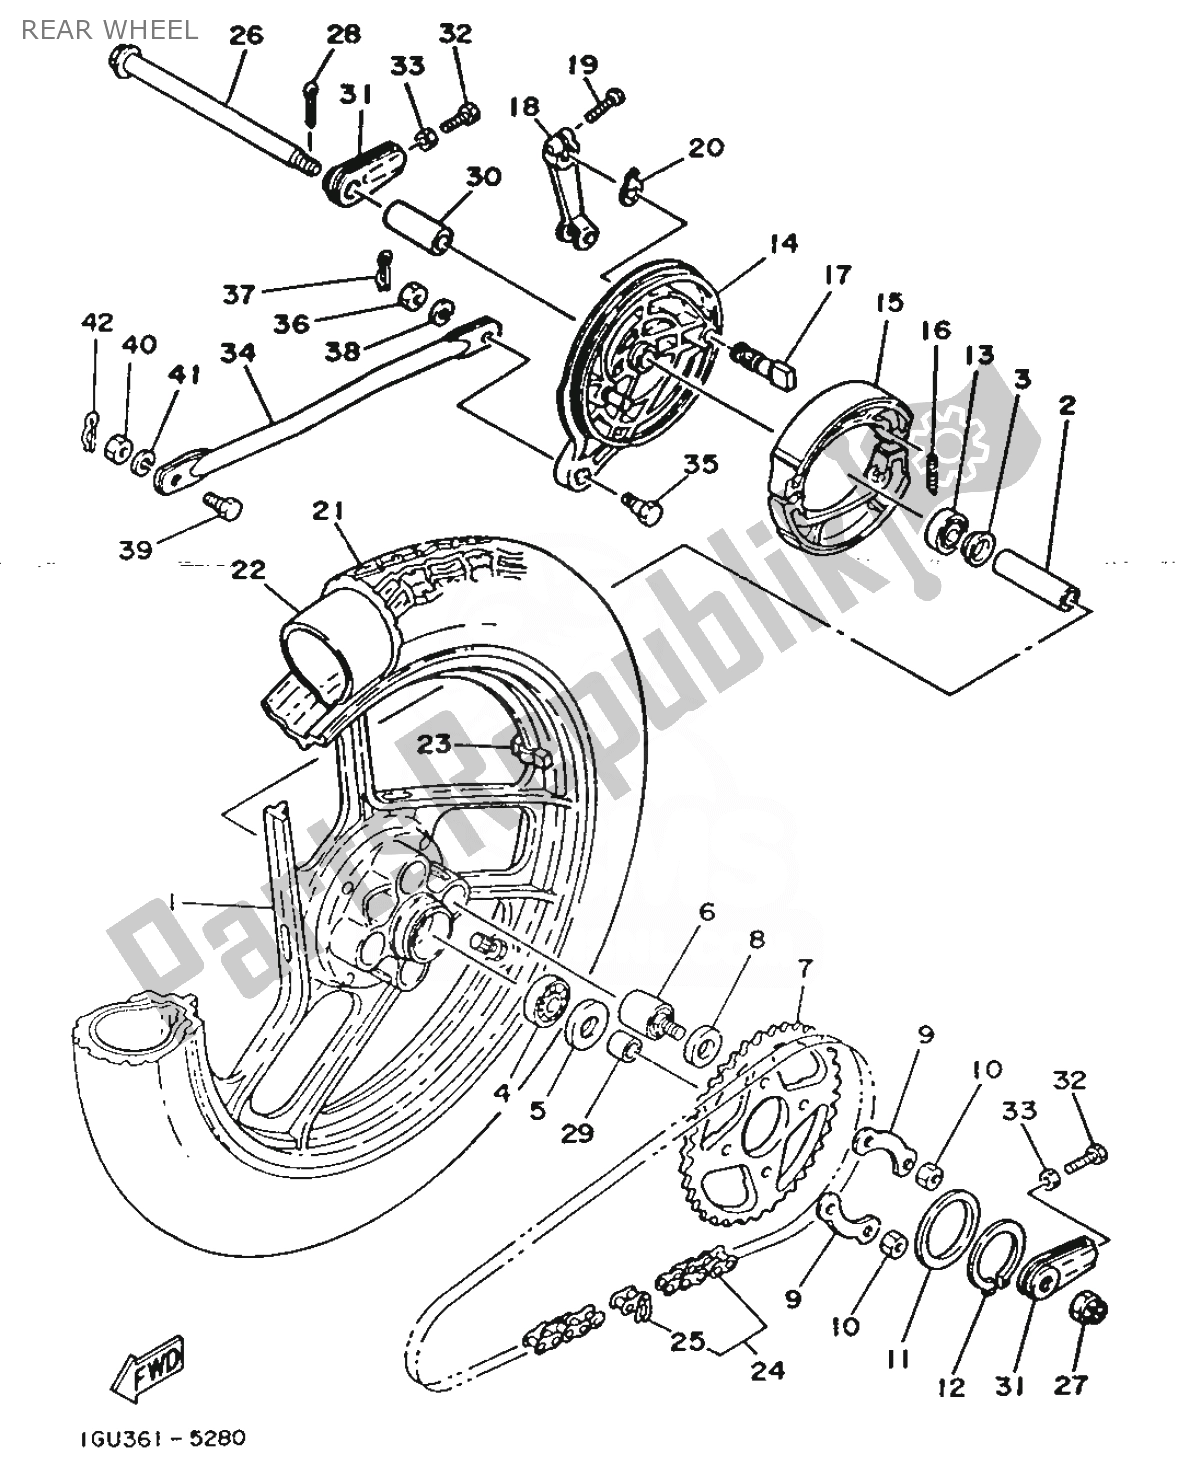 Todas las partes para Rueda Trasera de Yamaha RD 125 1986